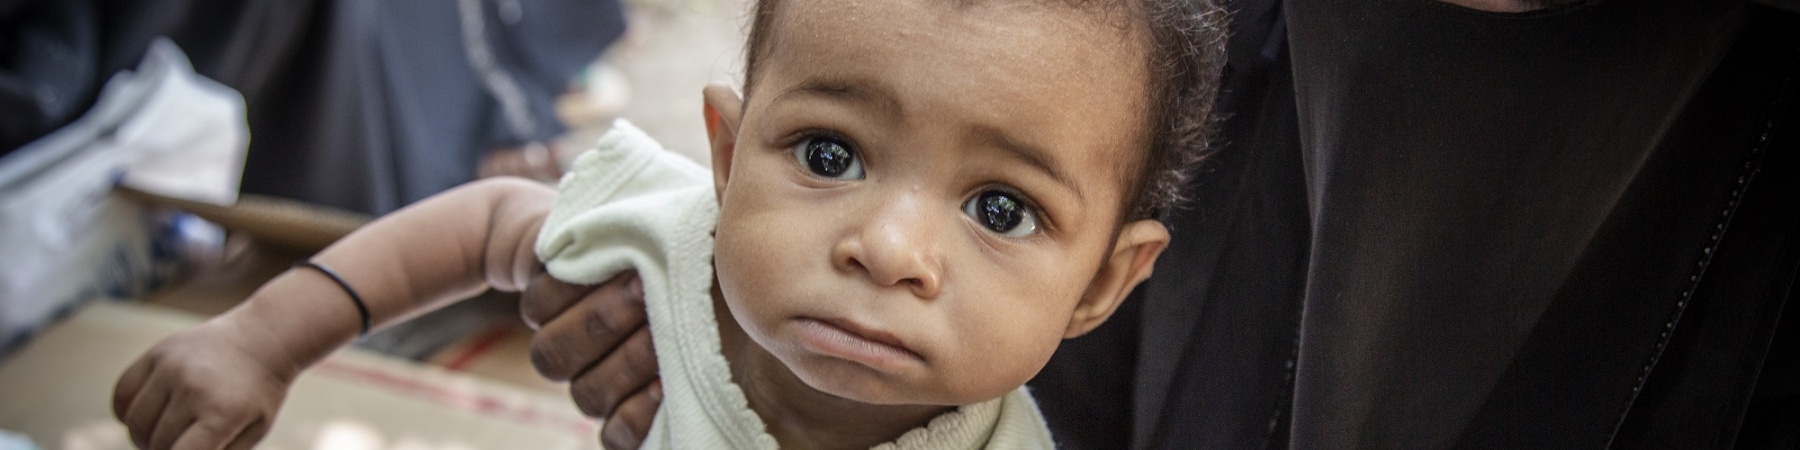 Bimbo yemenita sottoposto al test per la malnutrizione in braccio alla mamma 